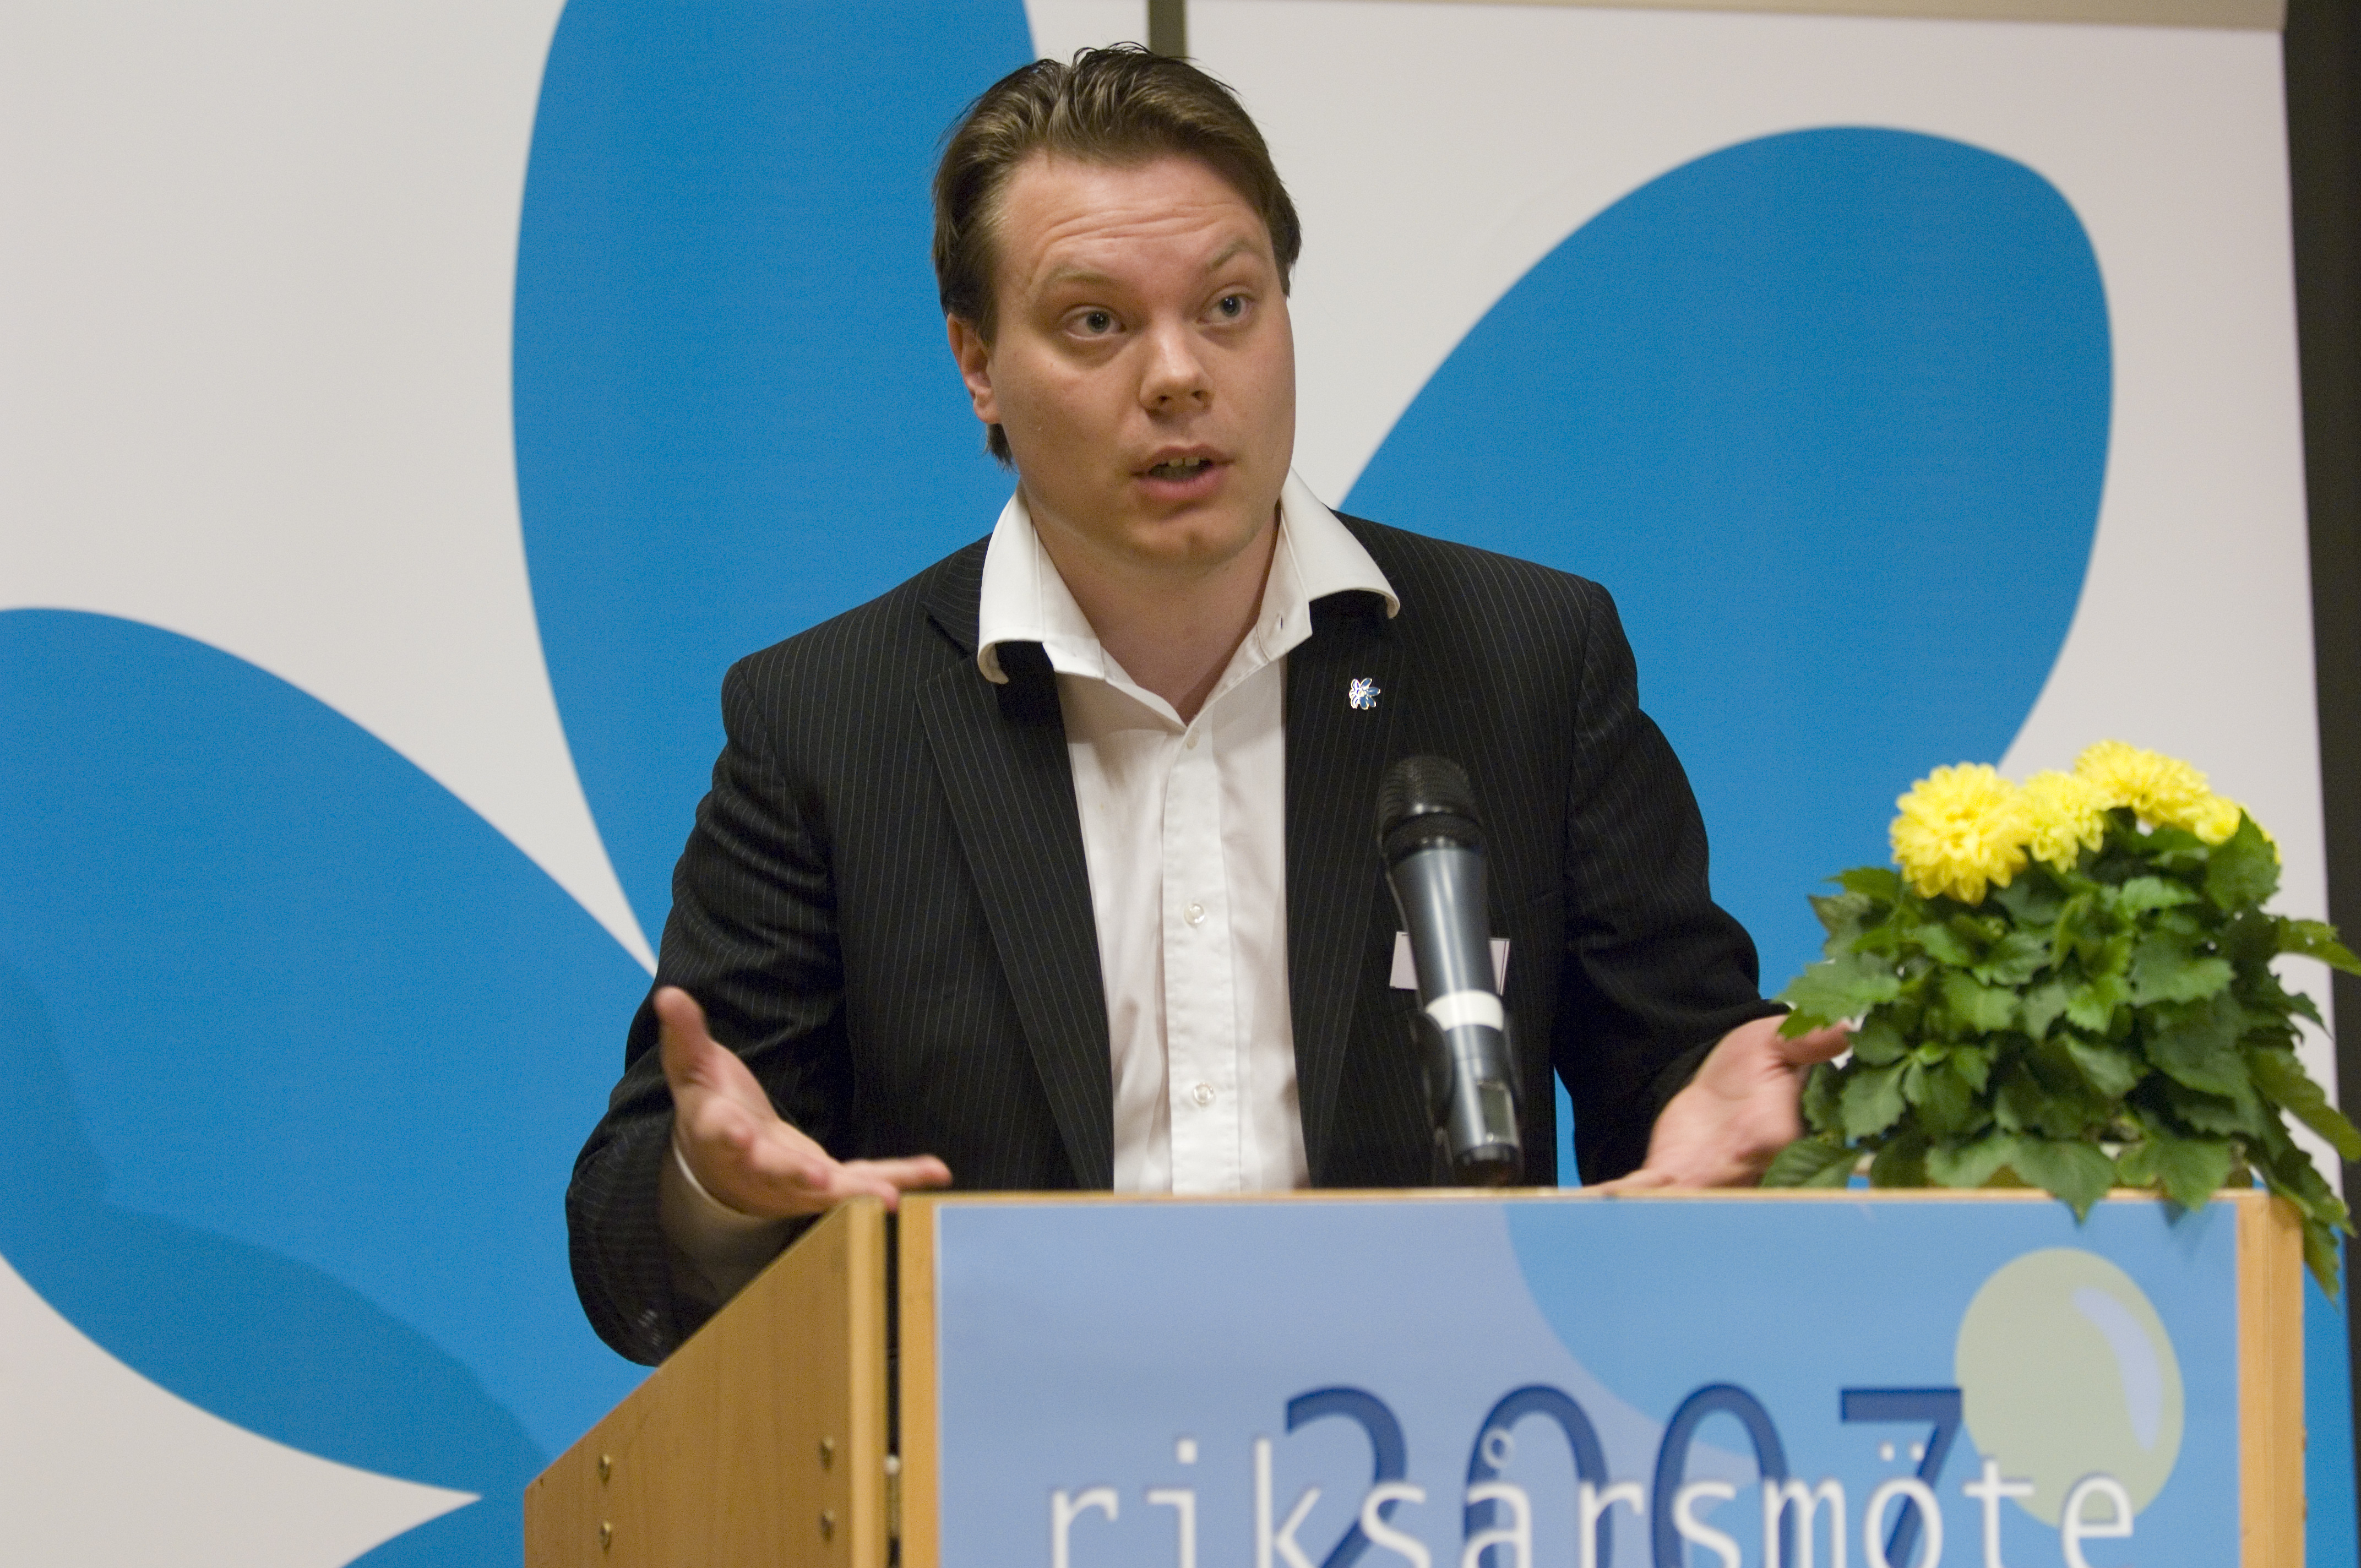 SD:s presschef Martin Kinnunen vill spekulera om eventuella konsekvenser i media.